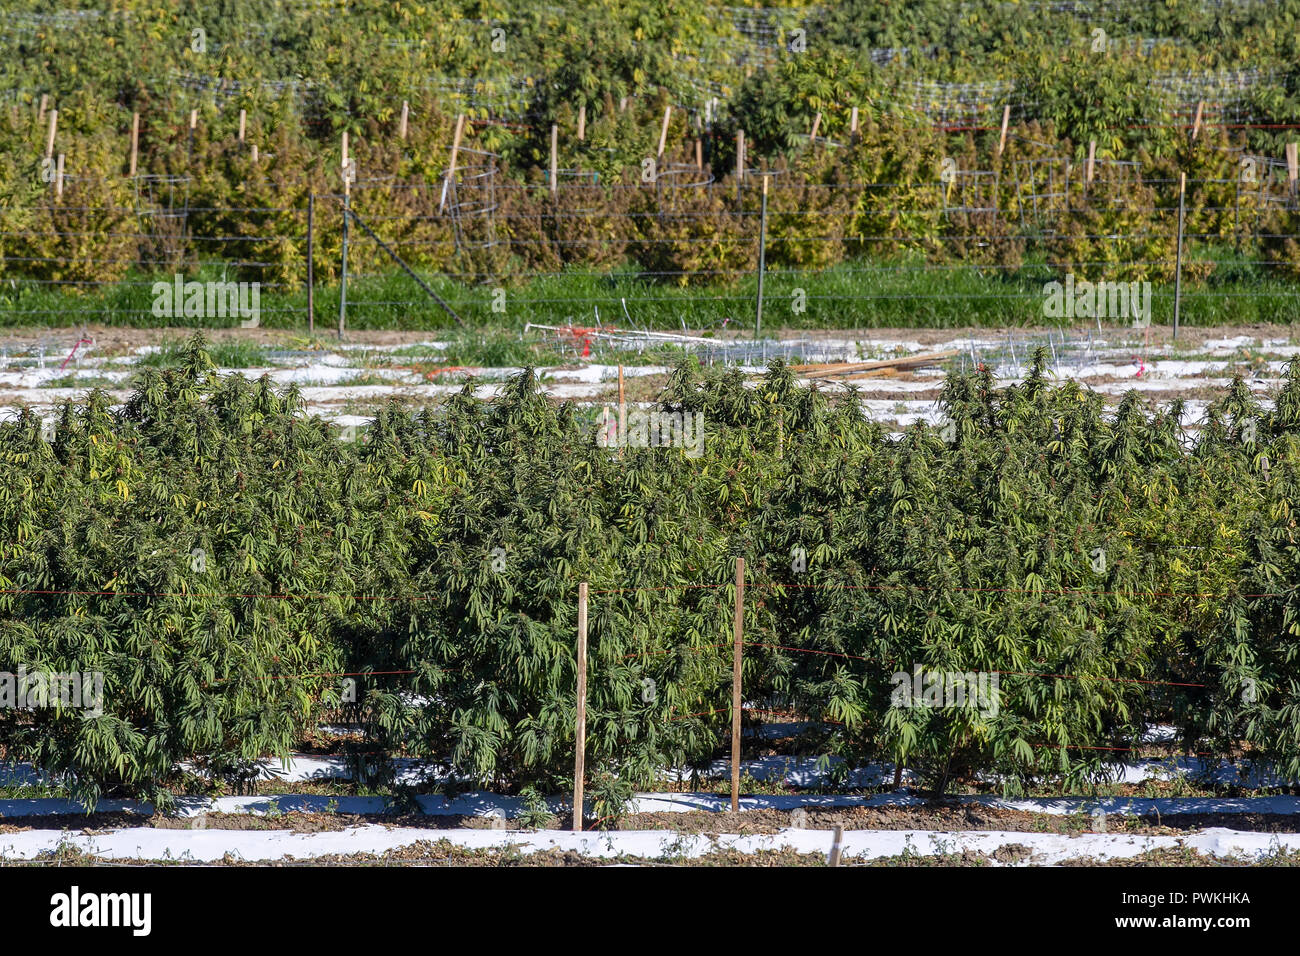 Outdoor legal Cannabis oder Marihuana Farm in der Erntezeit in der Nähe des Pueblo, Colorado. durch den Staat Colorado Lizenziert seit 2014. Stockfoto